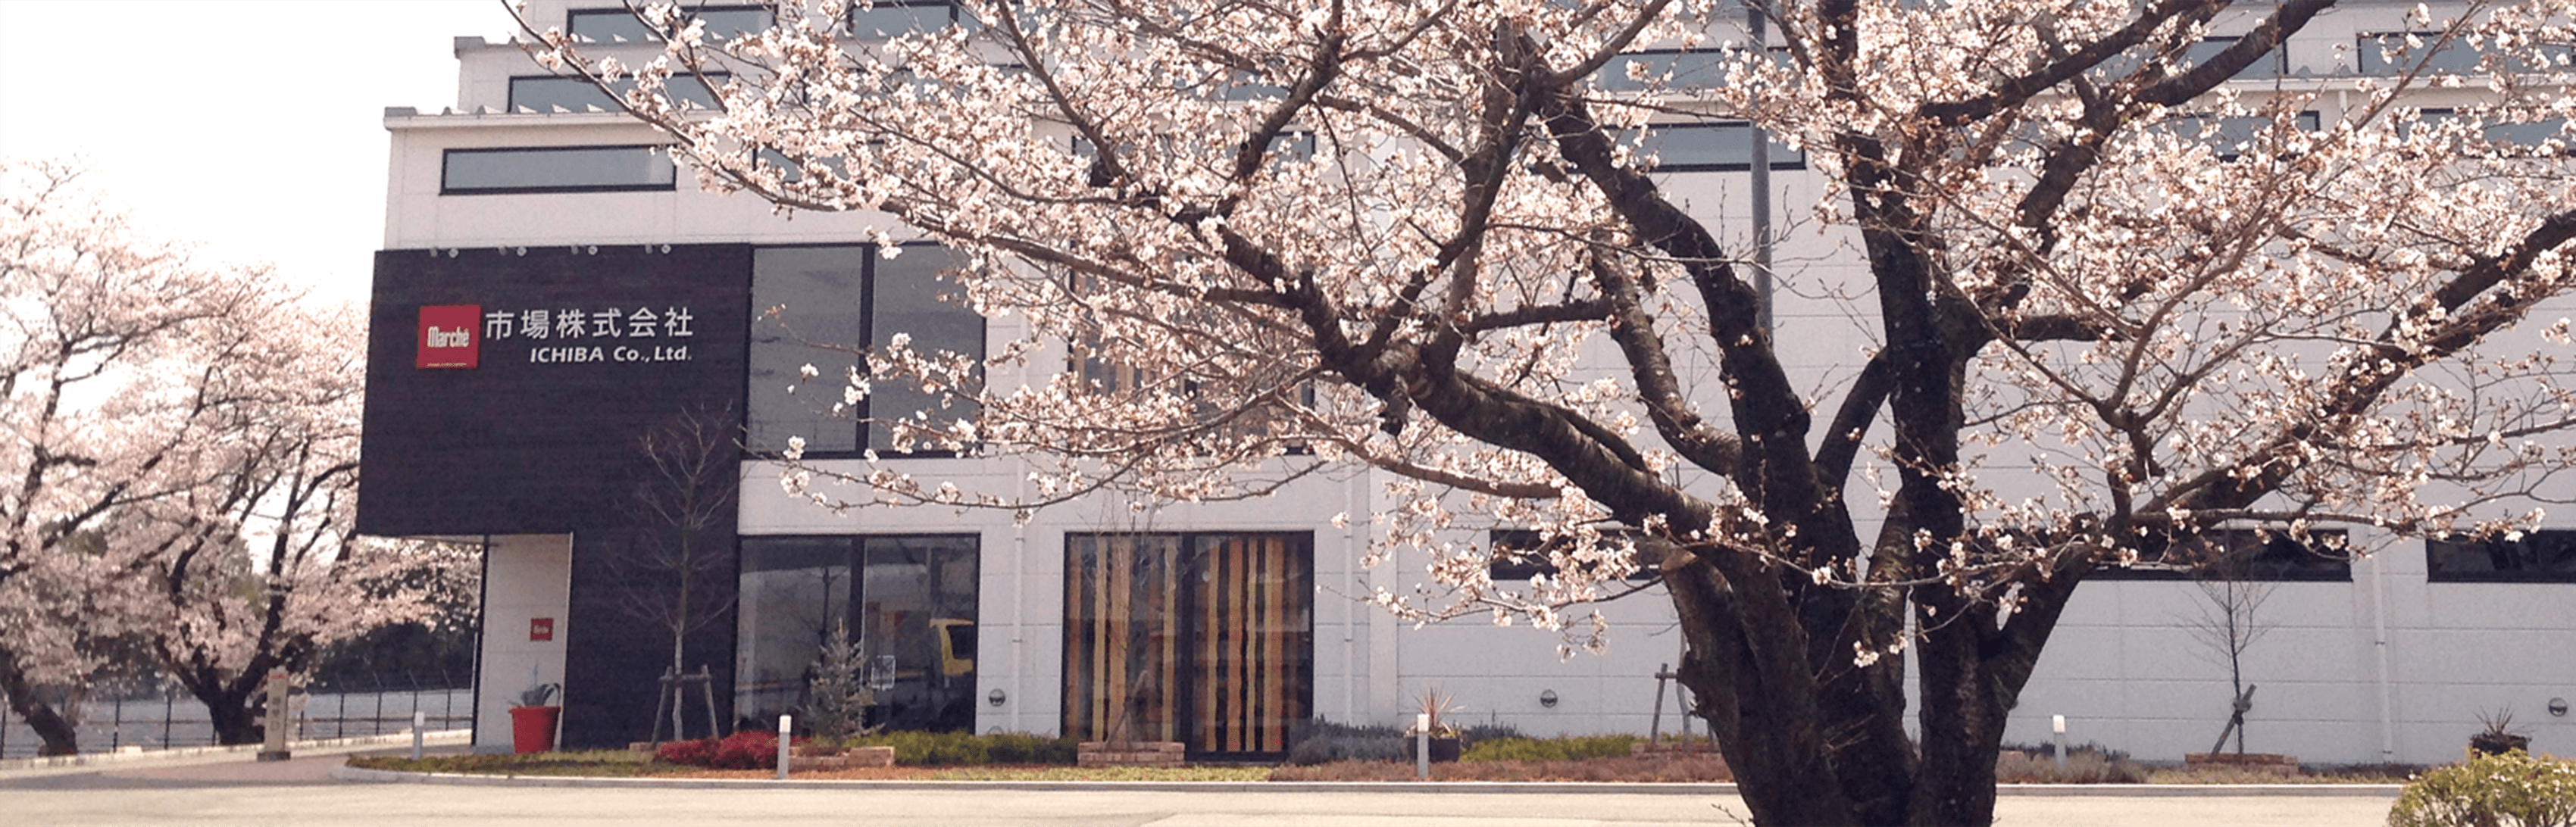 中学校の跡地、桜の木がシンボルの本社・ショールーム